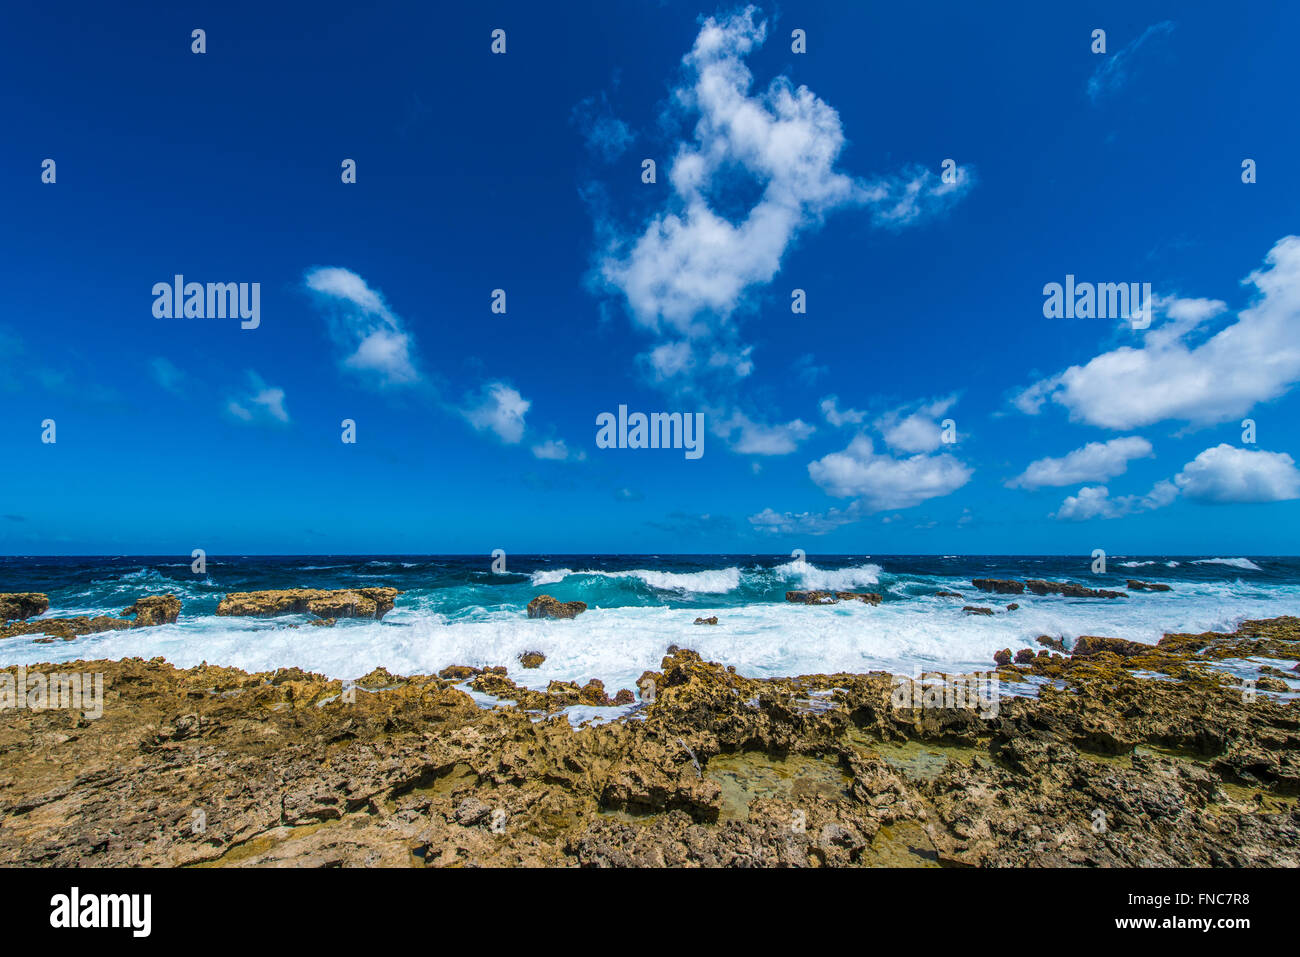 Joli Bonaire avec ses beaux paysages, plages et récifs incroyables. Un paradis pour les sports nautiques et les amoureux de la nature Banque D'Images